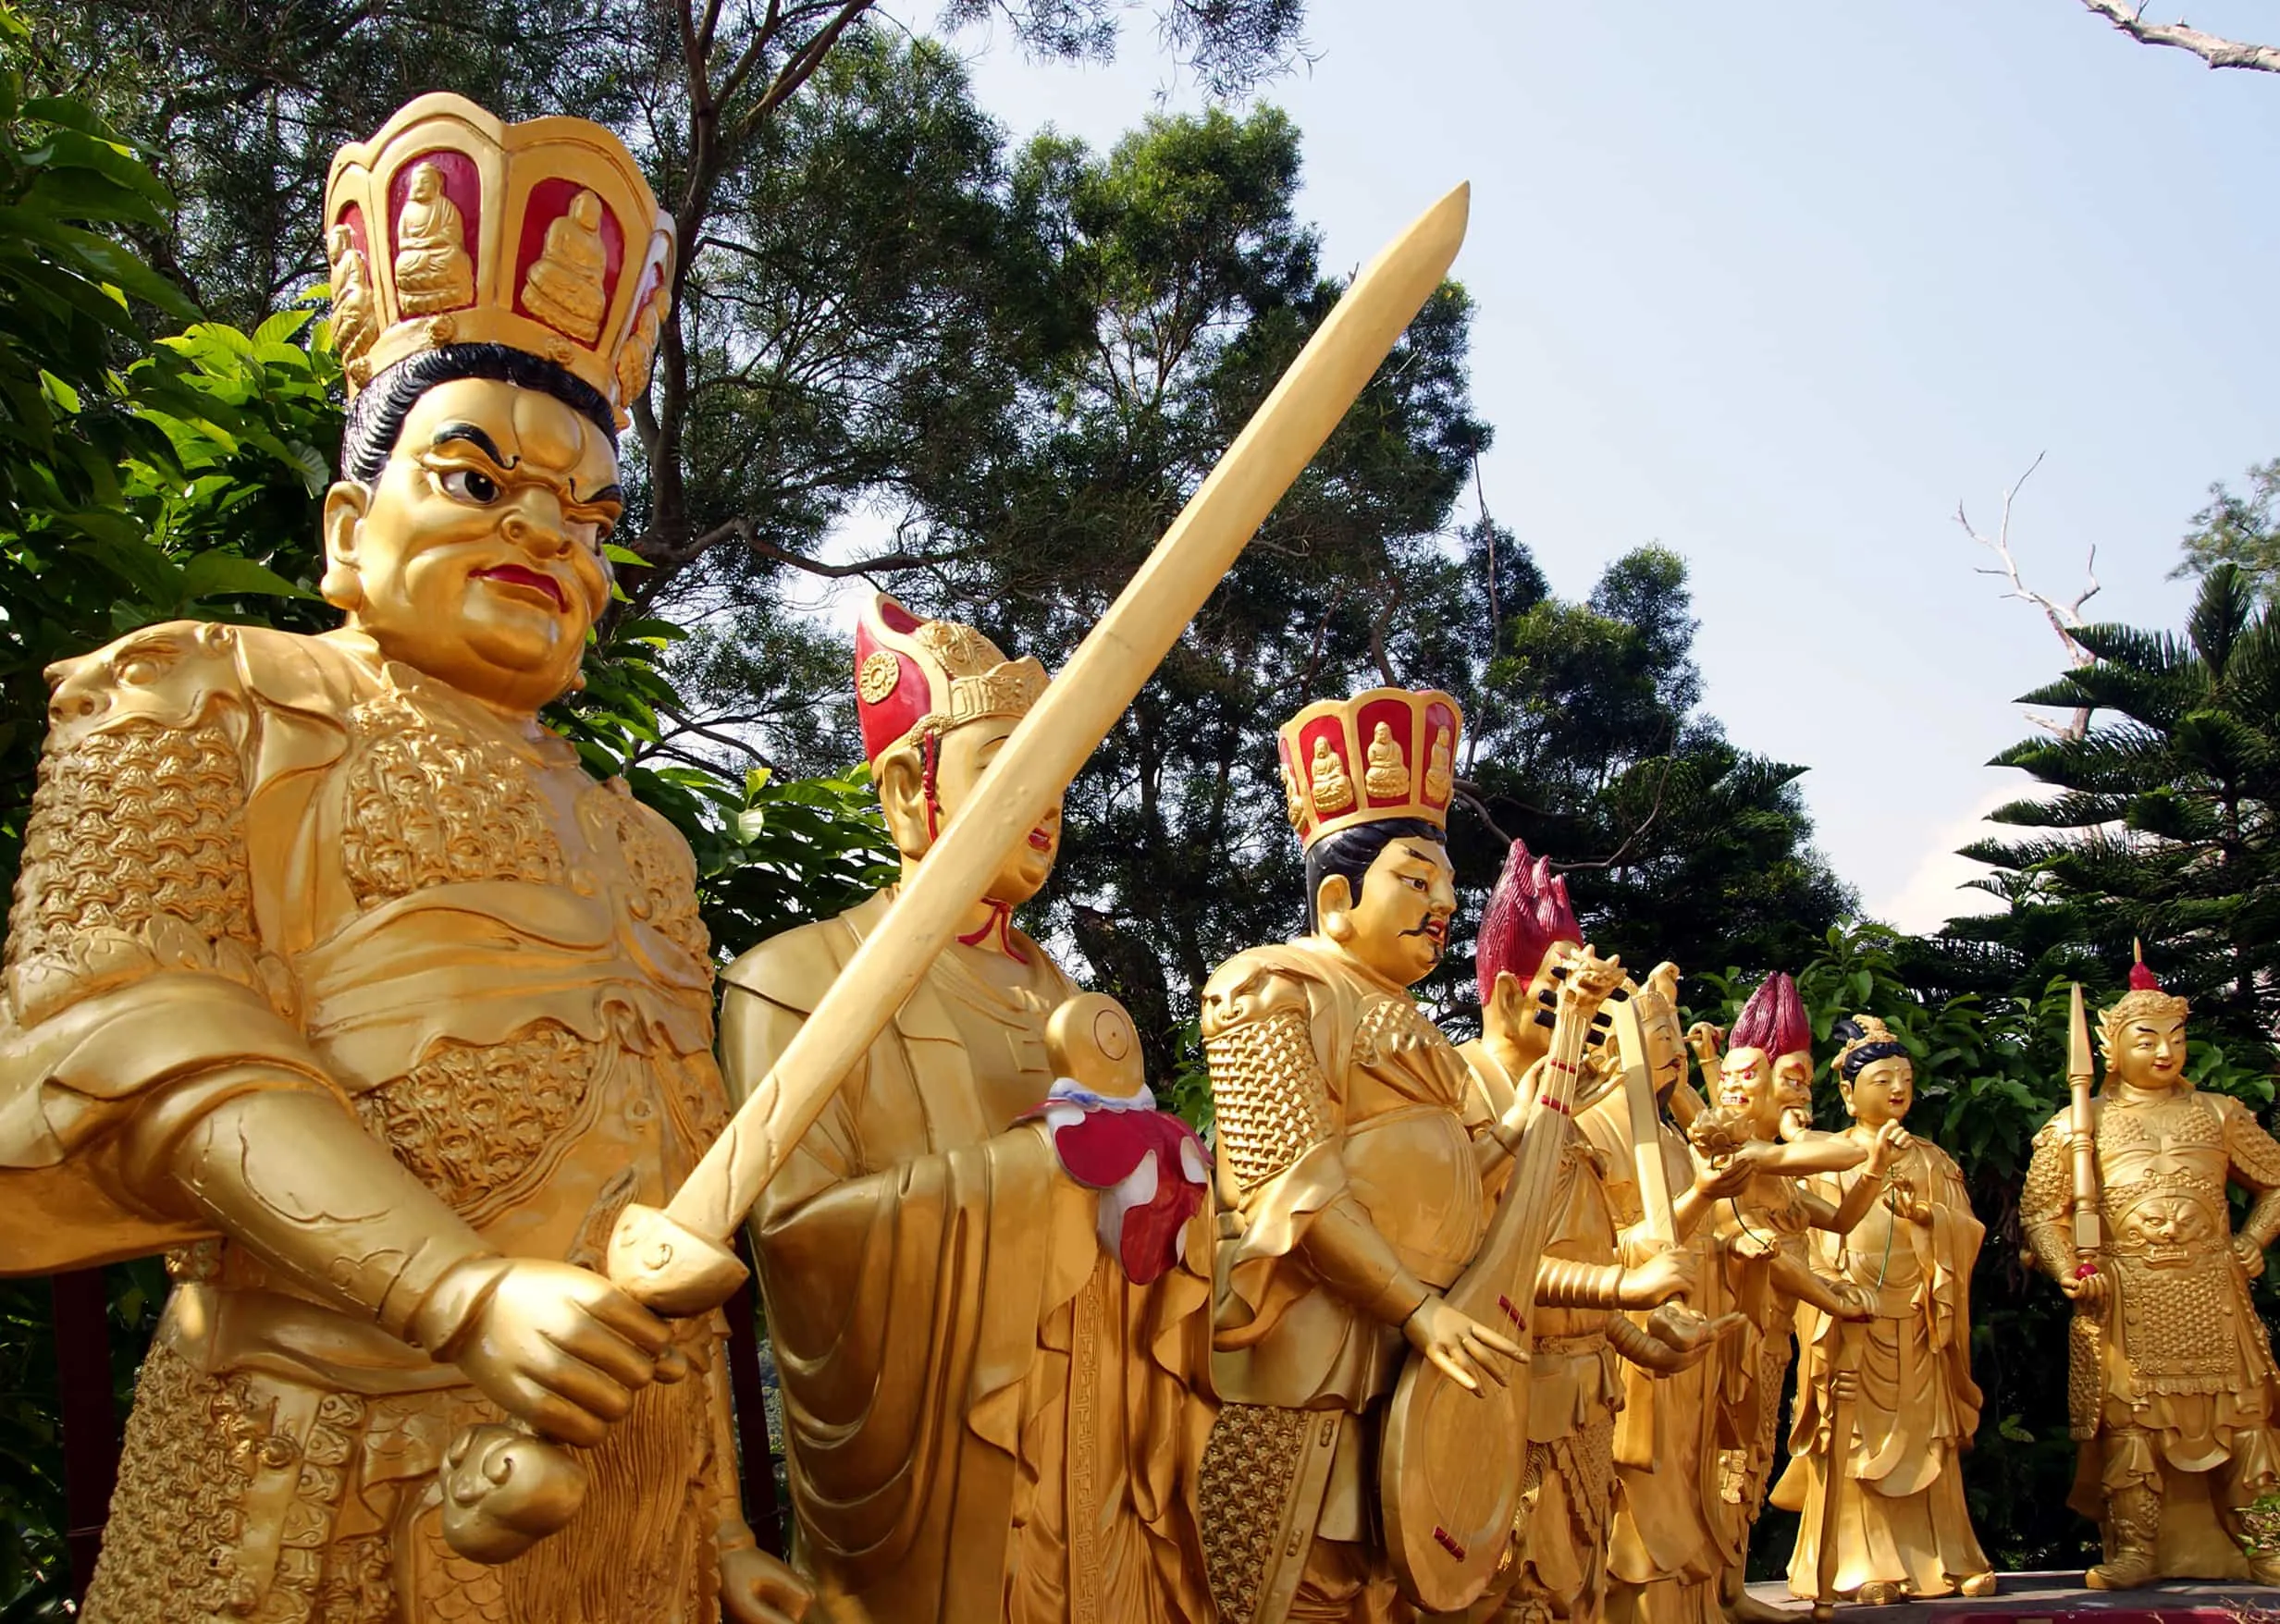 Ten Thousand Buddhas, Hong Kong tourist spots